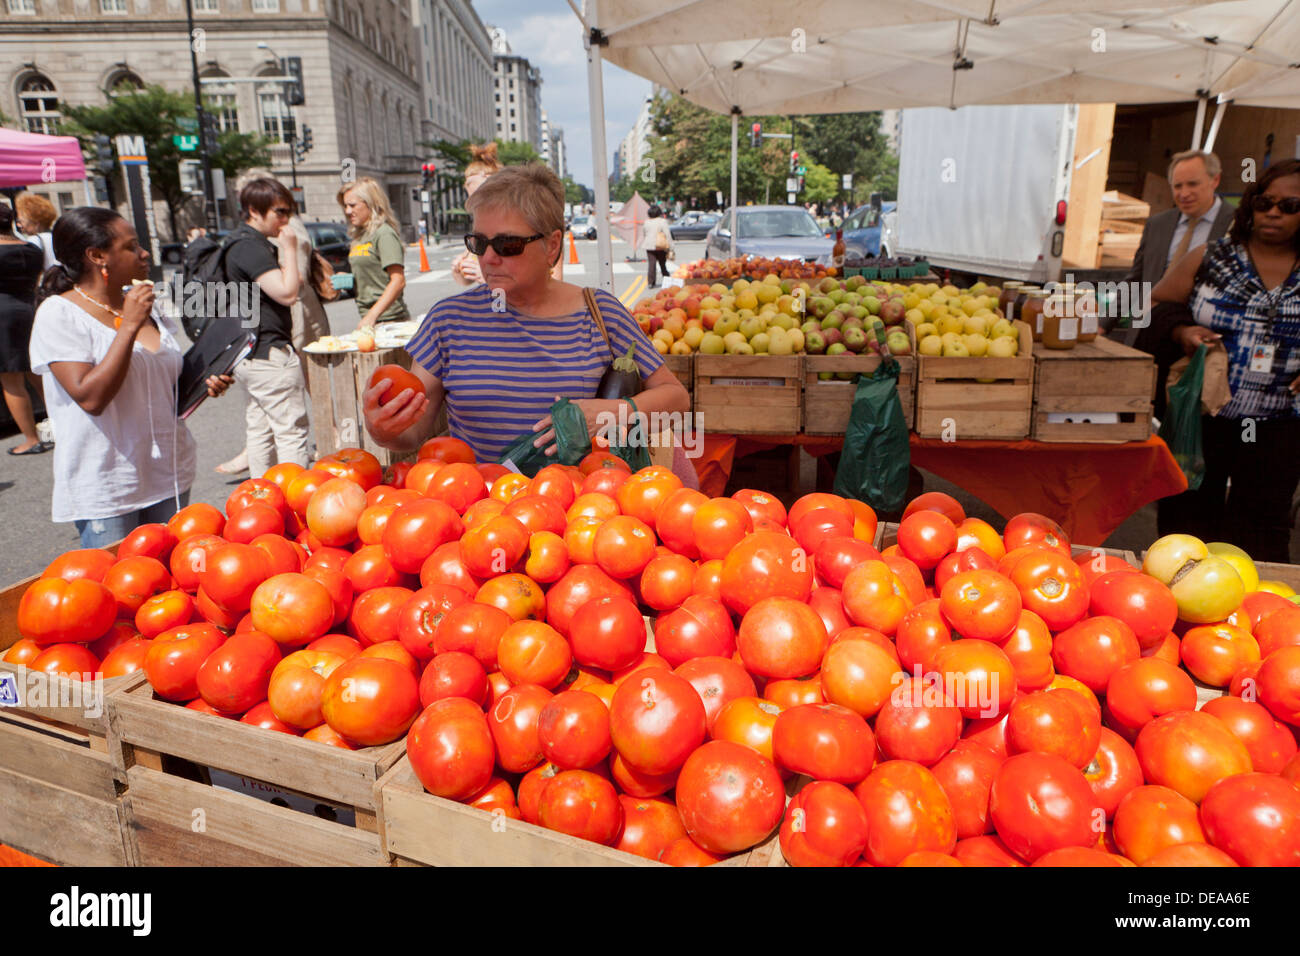 L'achat de femme au marché de producteurs de tomates fraîches - Washington, DC USA Banque D'Images